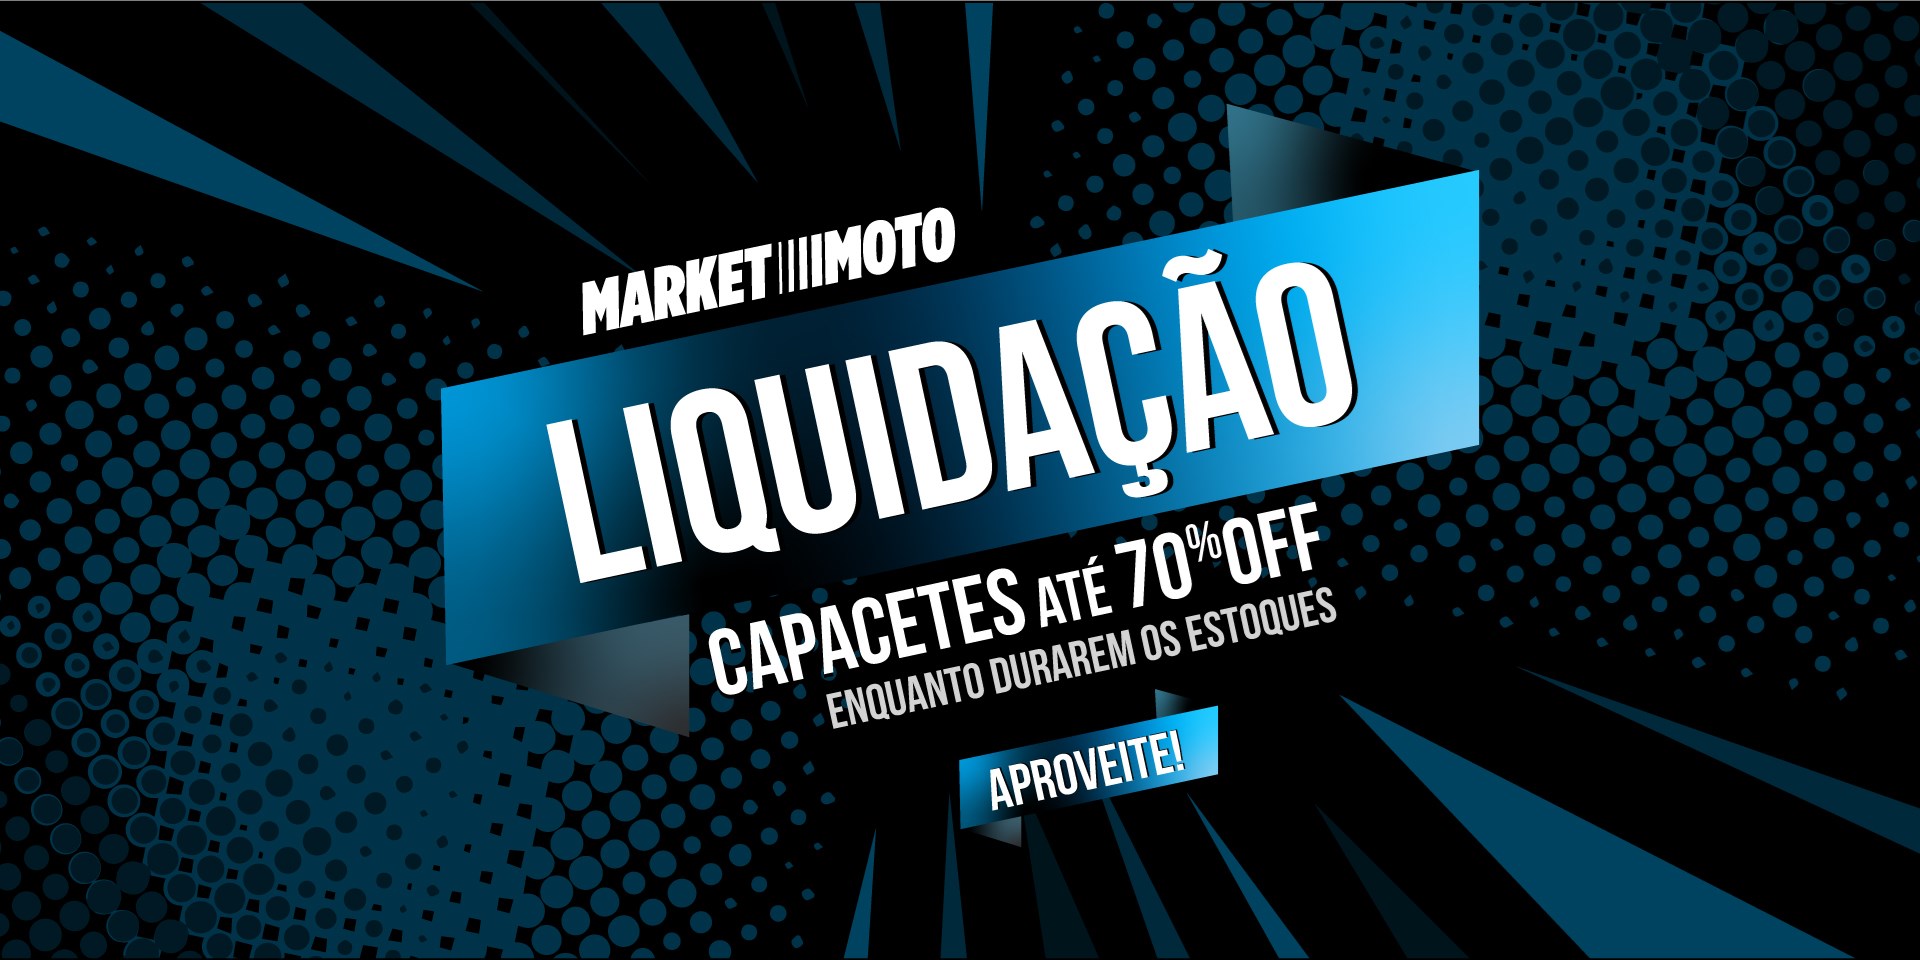 Liquidação Market Moto